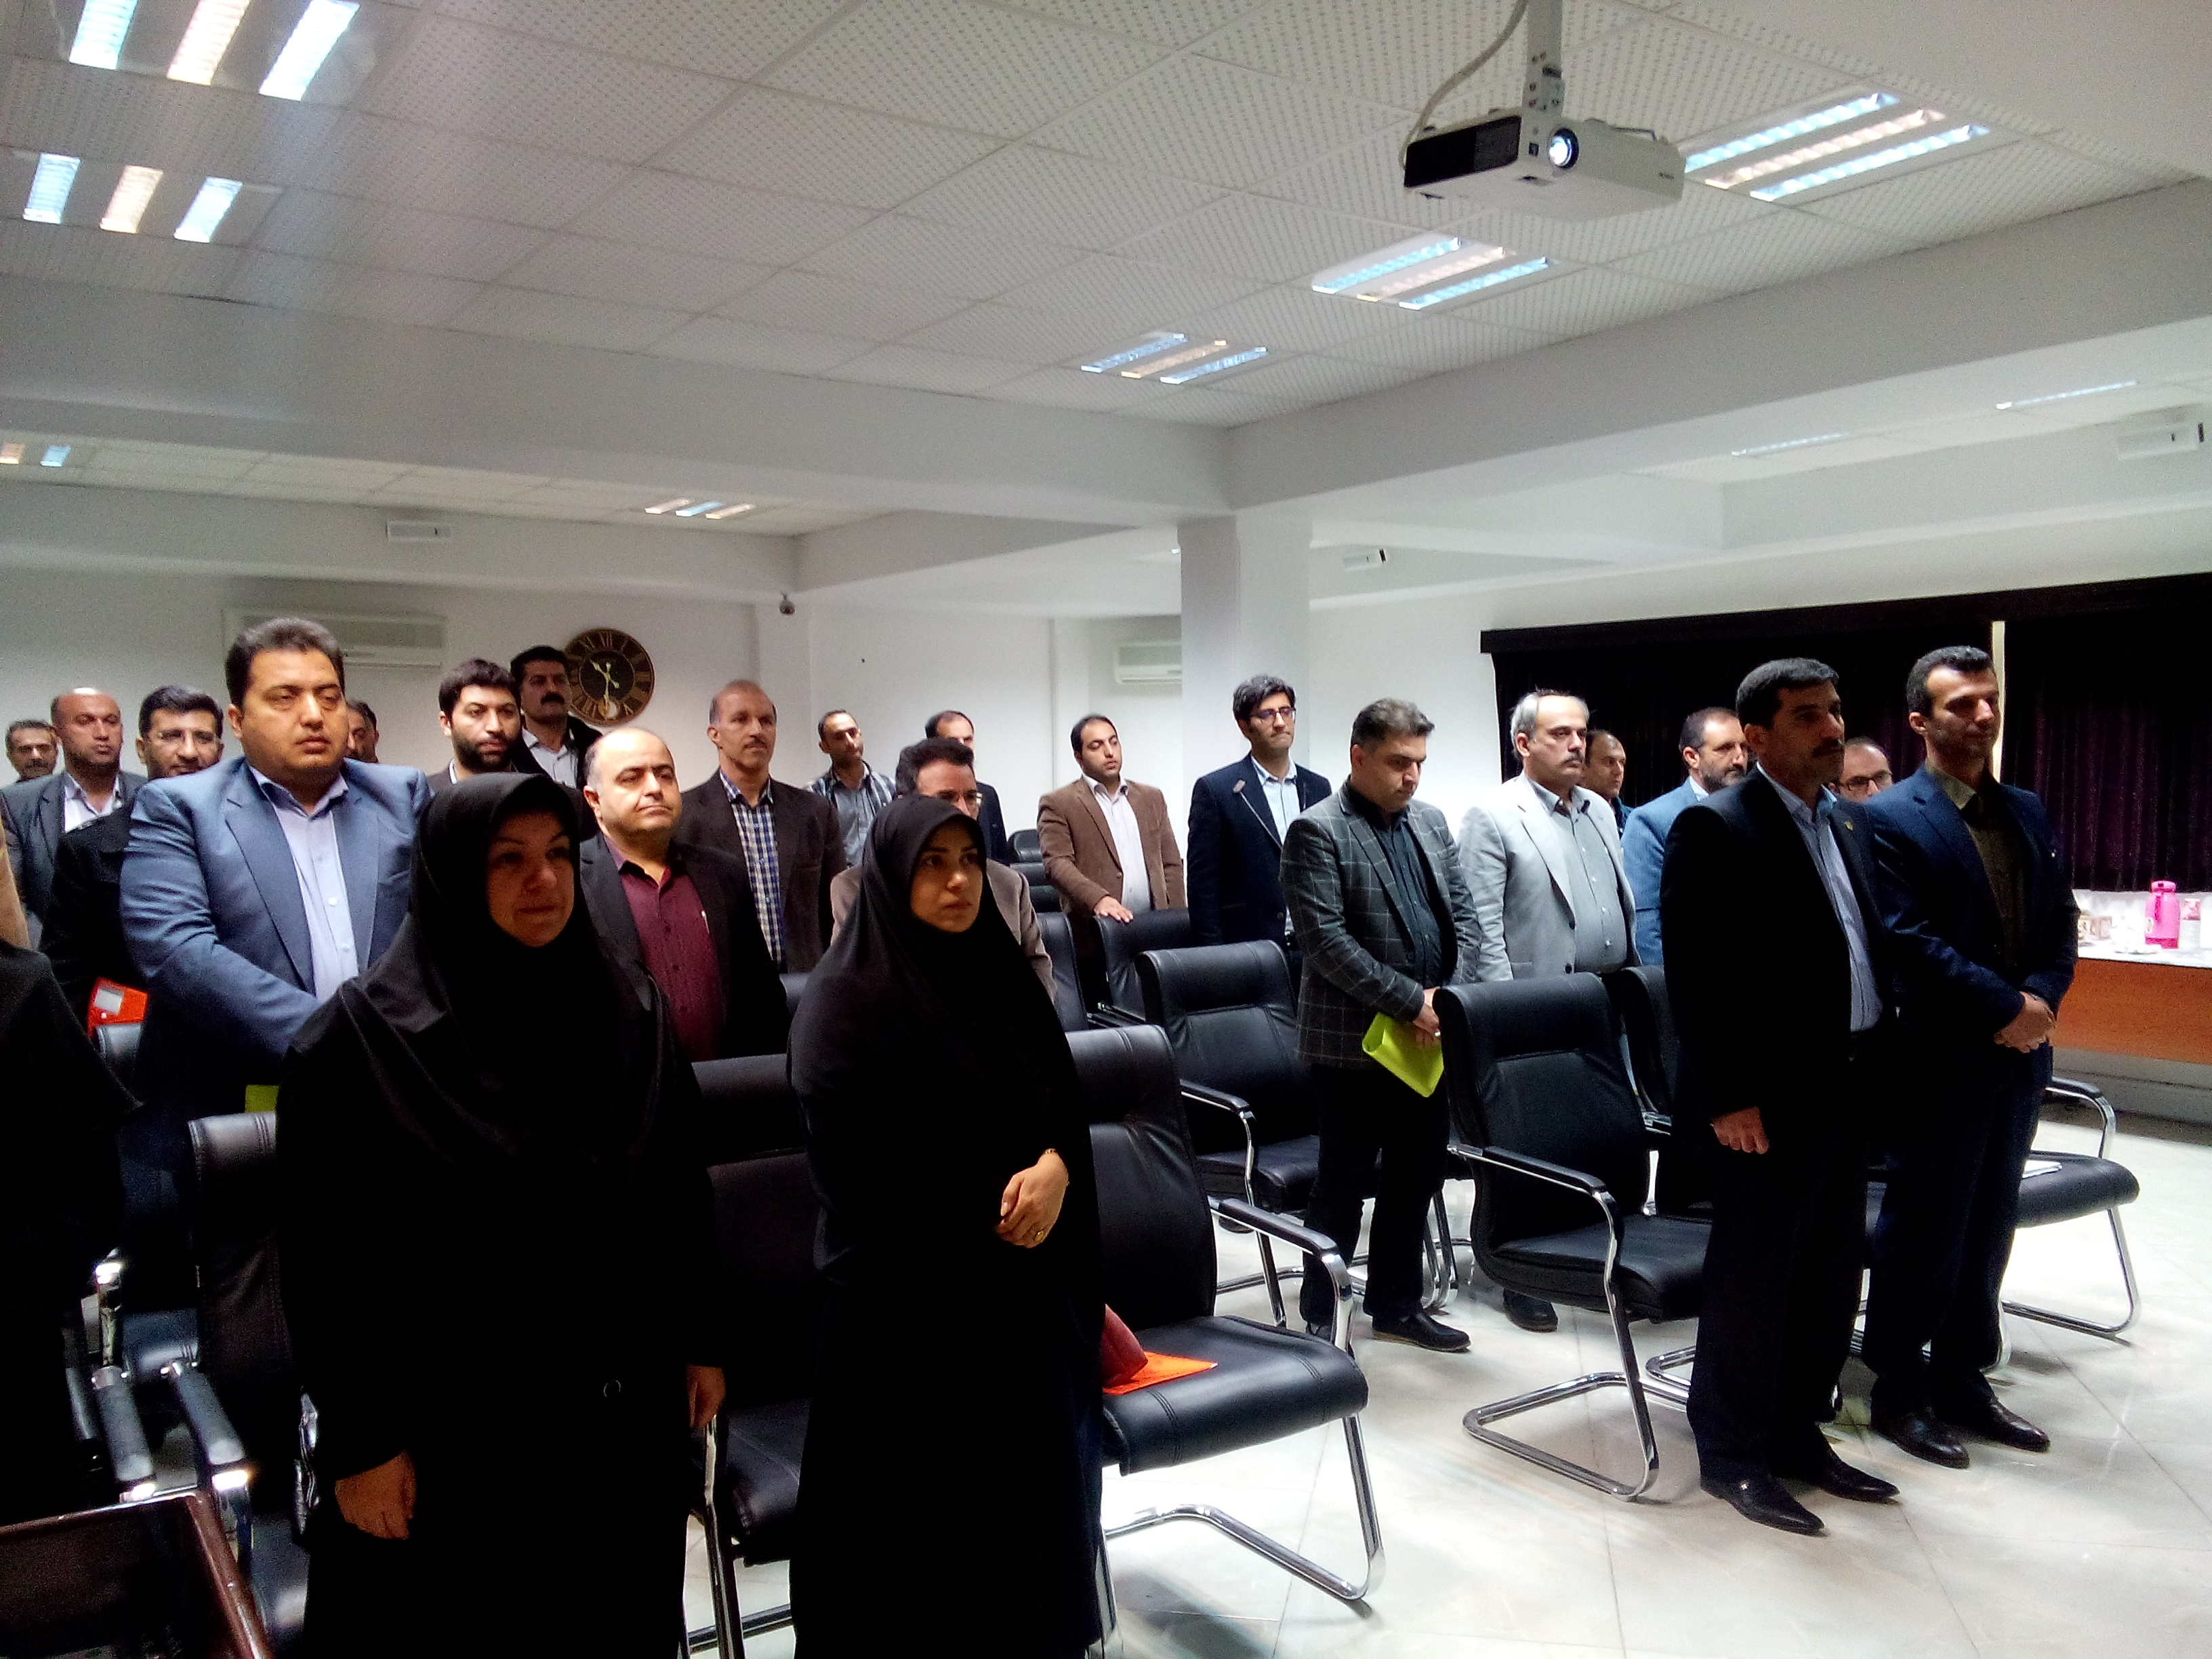 جلسه آموزشی مناسب سازی
معابر و اماکن اداری و عمومی در دفتر نمایندگی بهشهر برگزار شد
